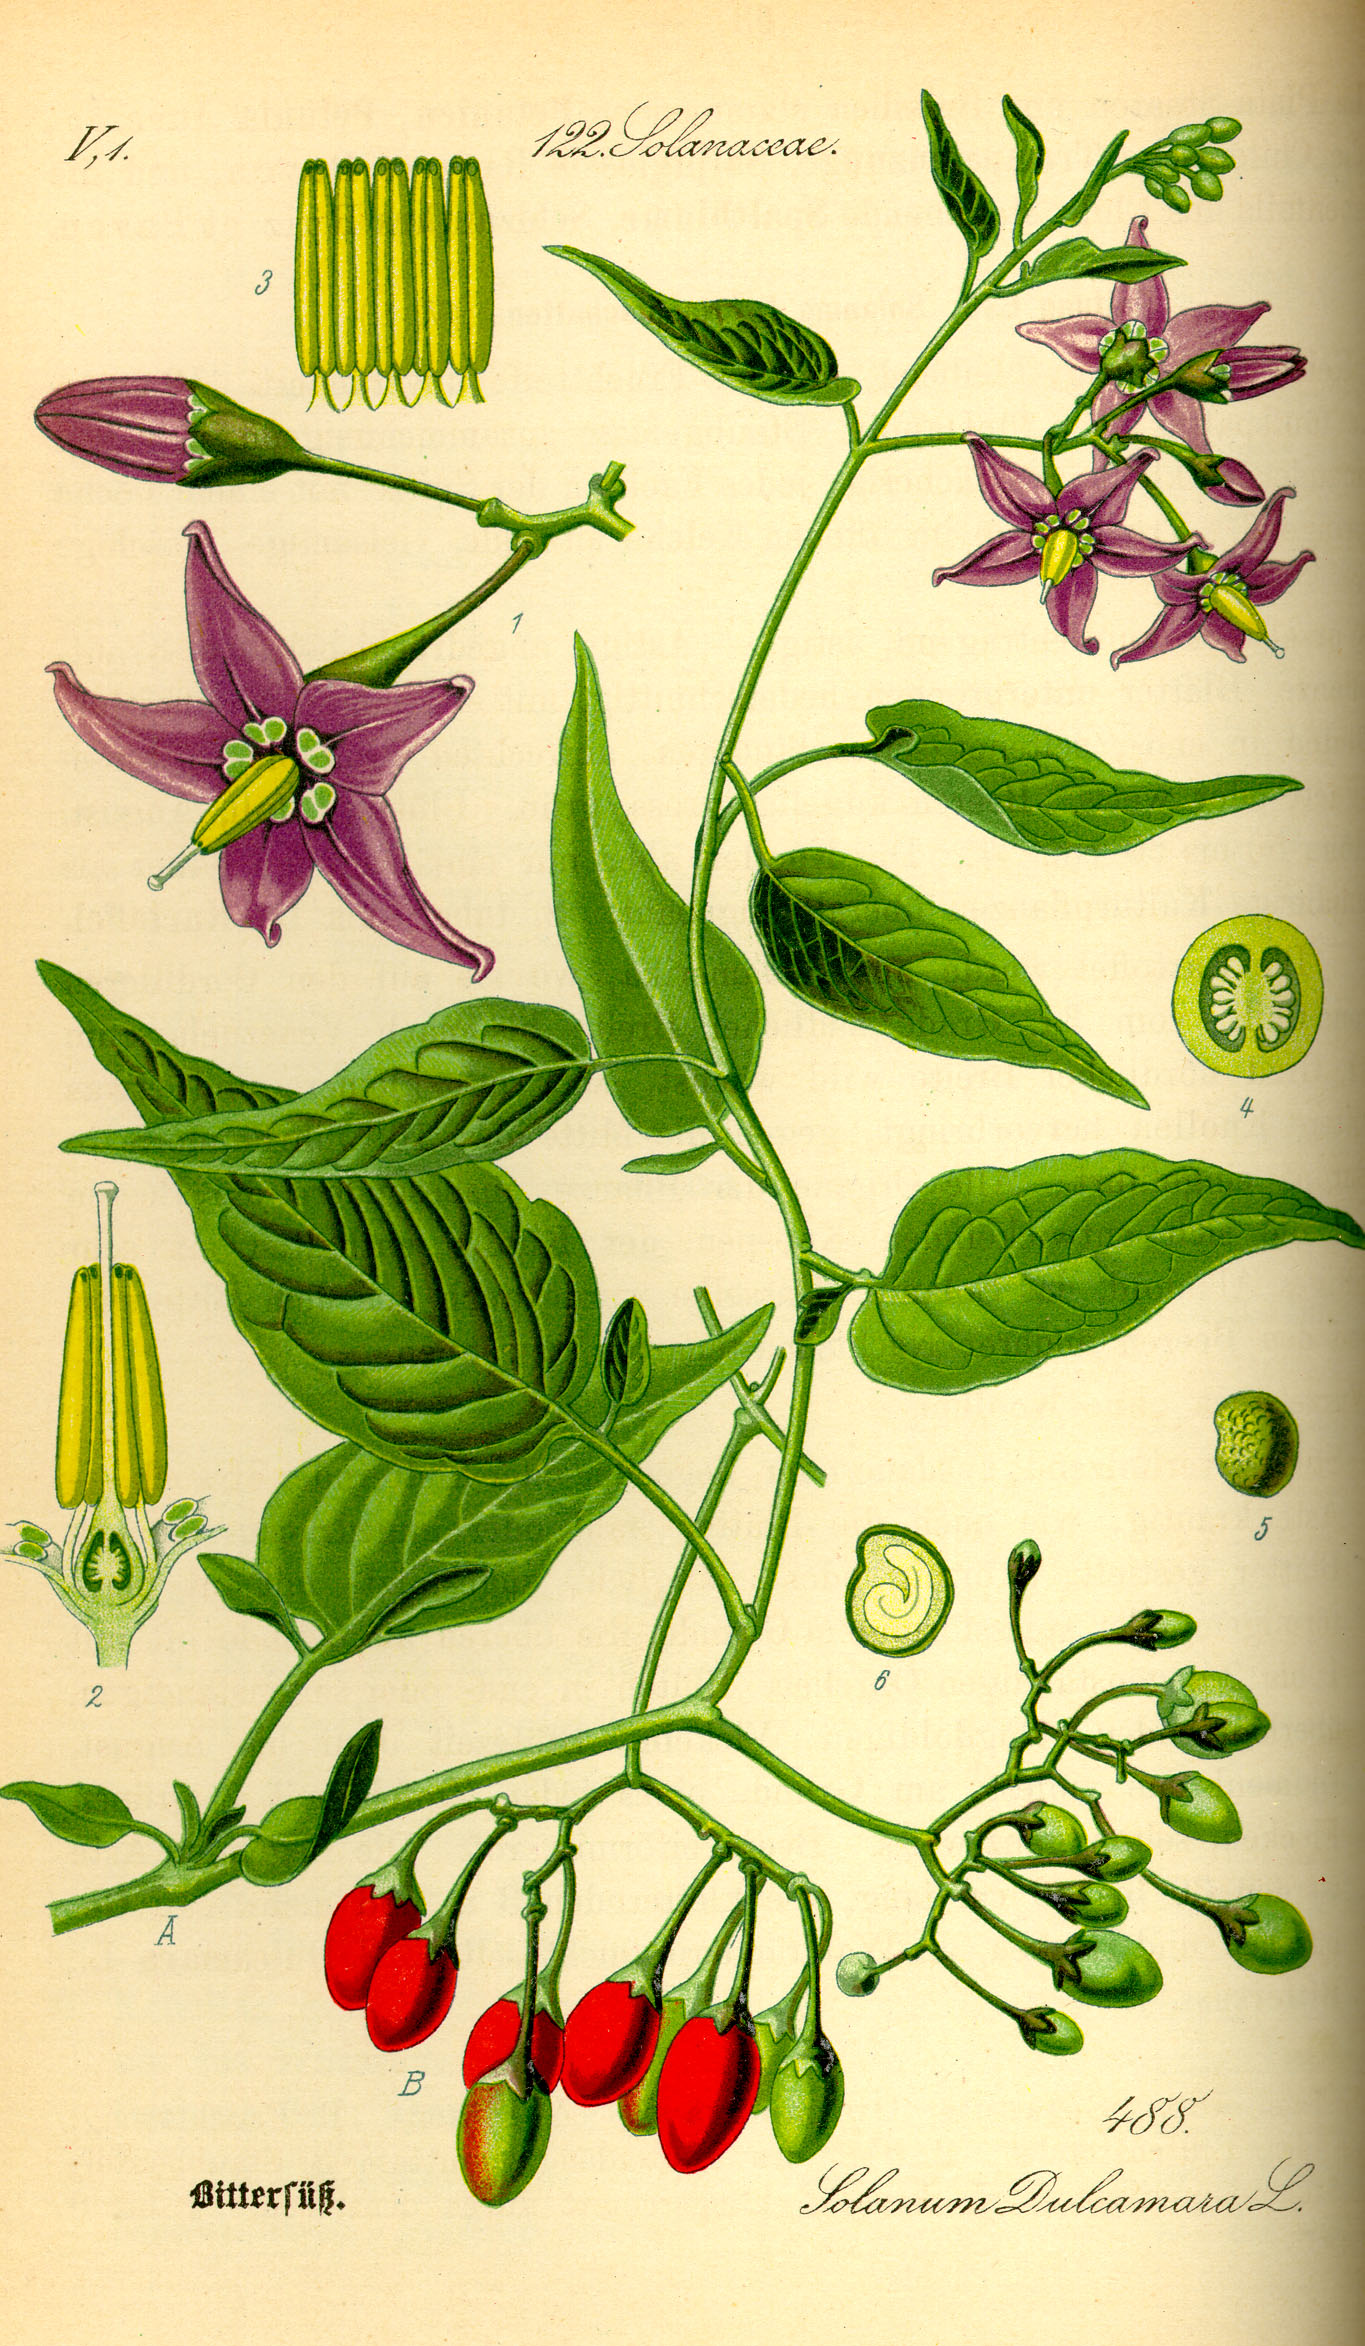 1885 Bittersweet Nightshade botanical illustration.